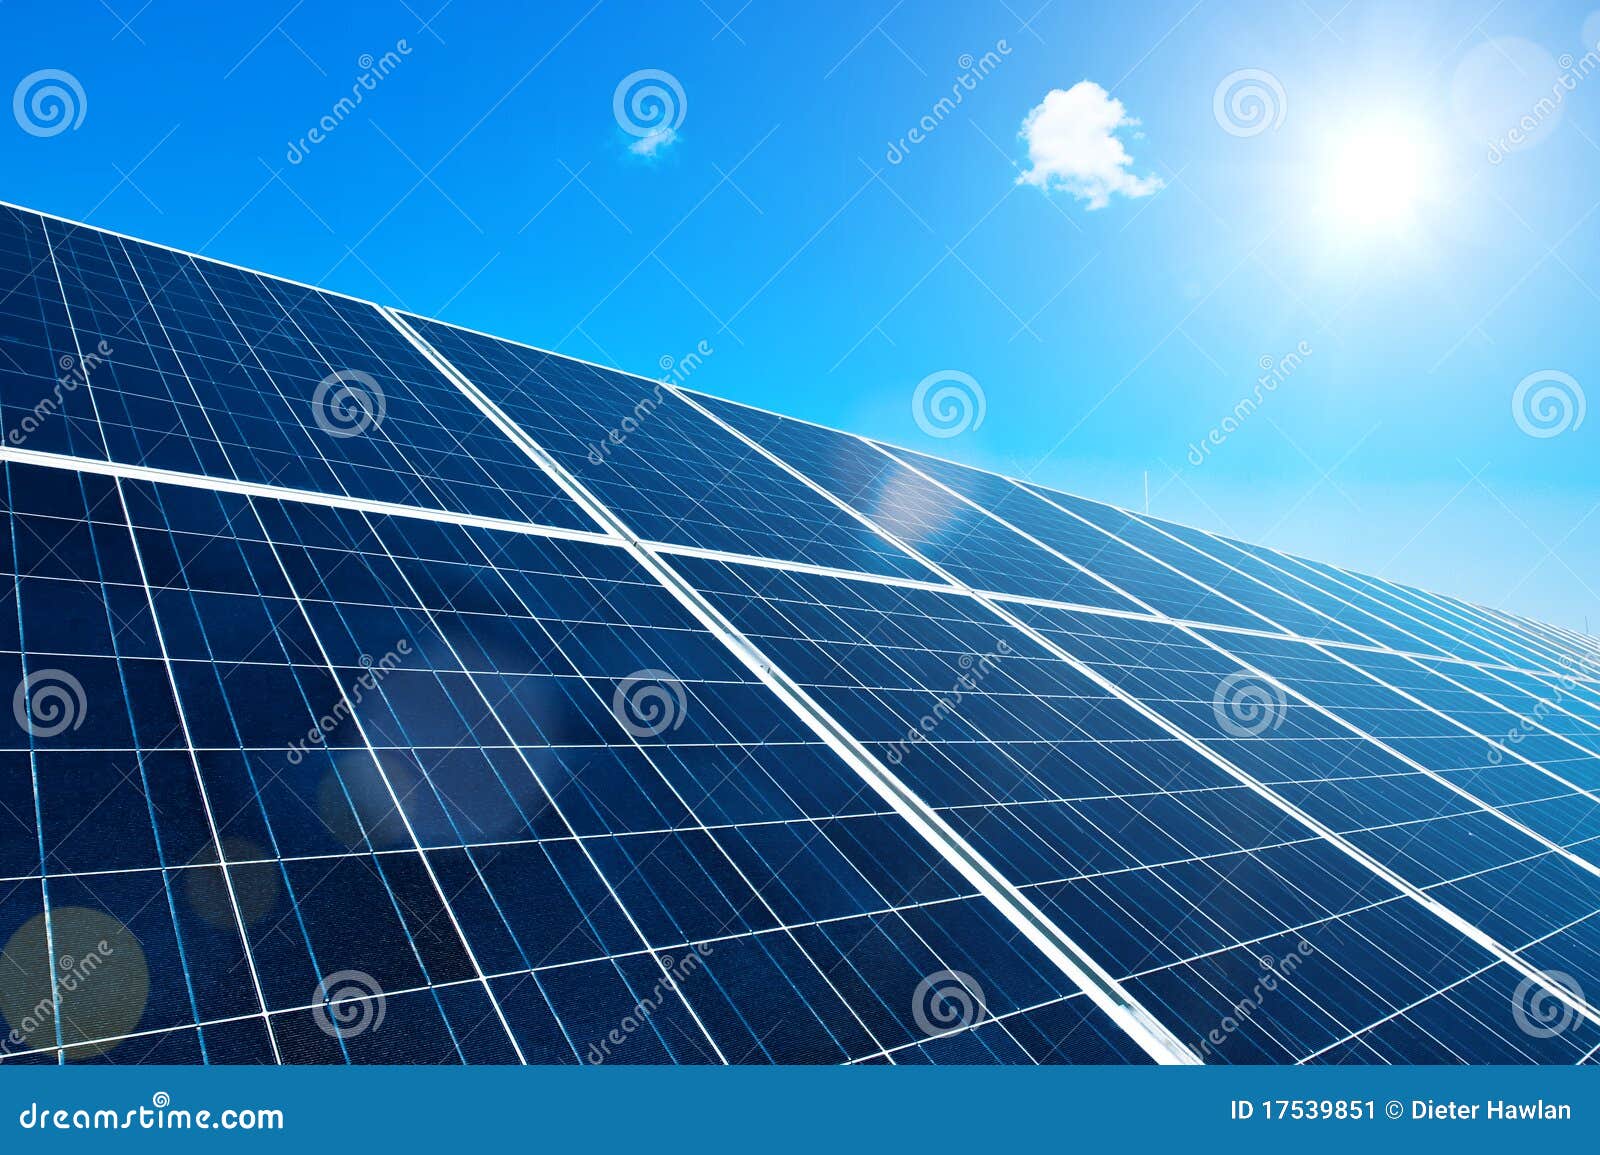 solar panel with sun